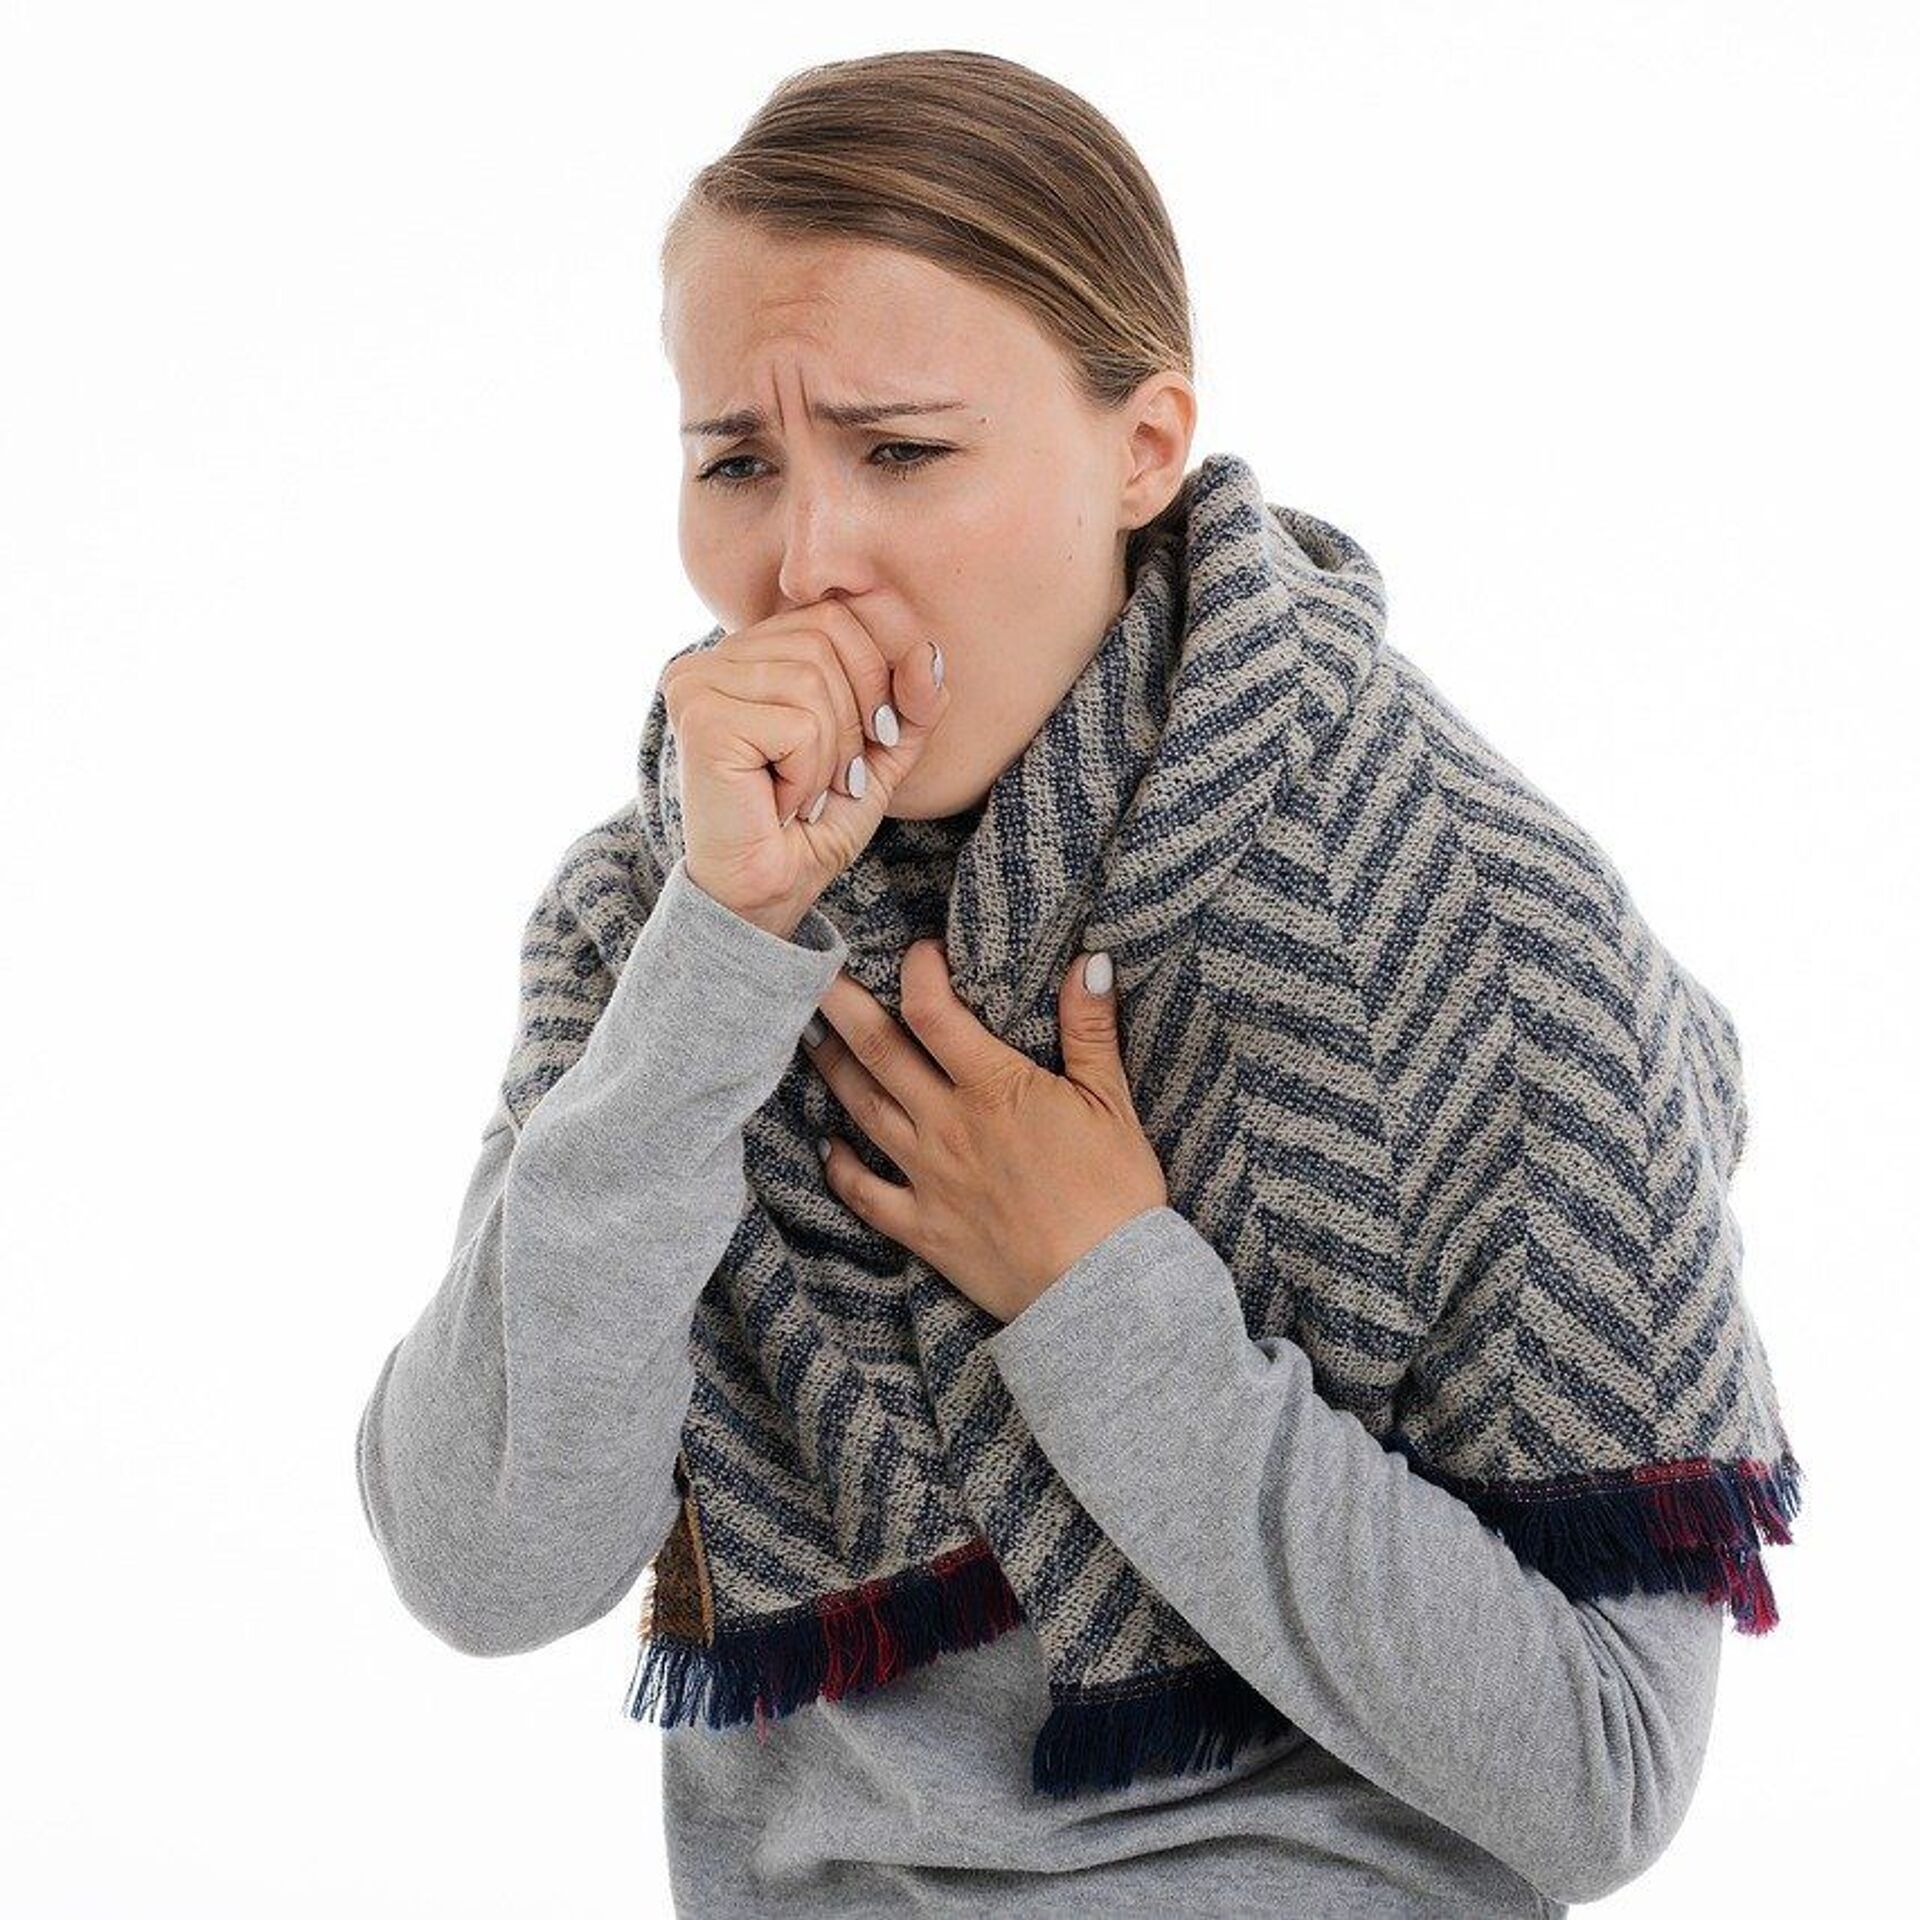 Пульмонолог: боли в груди и затрудненный вдох – это не обязательно  пневмония - 13.07.2020, Sputnik Казахстан